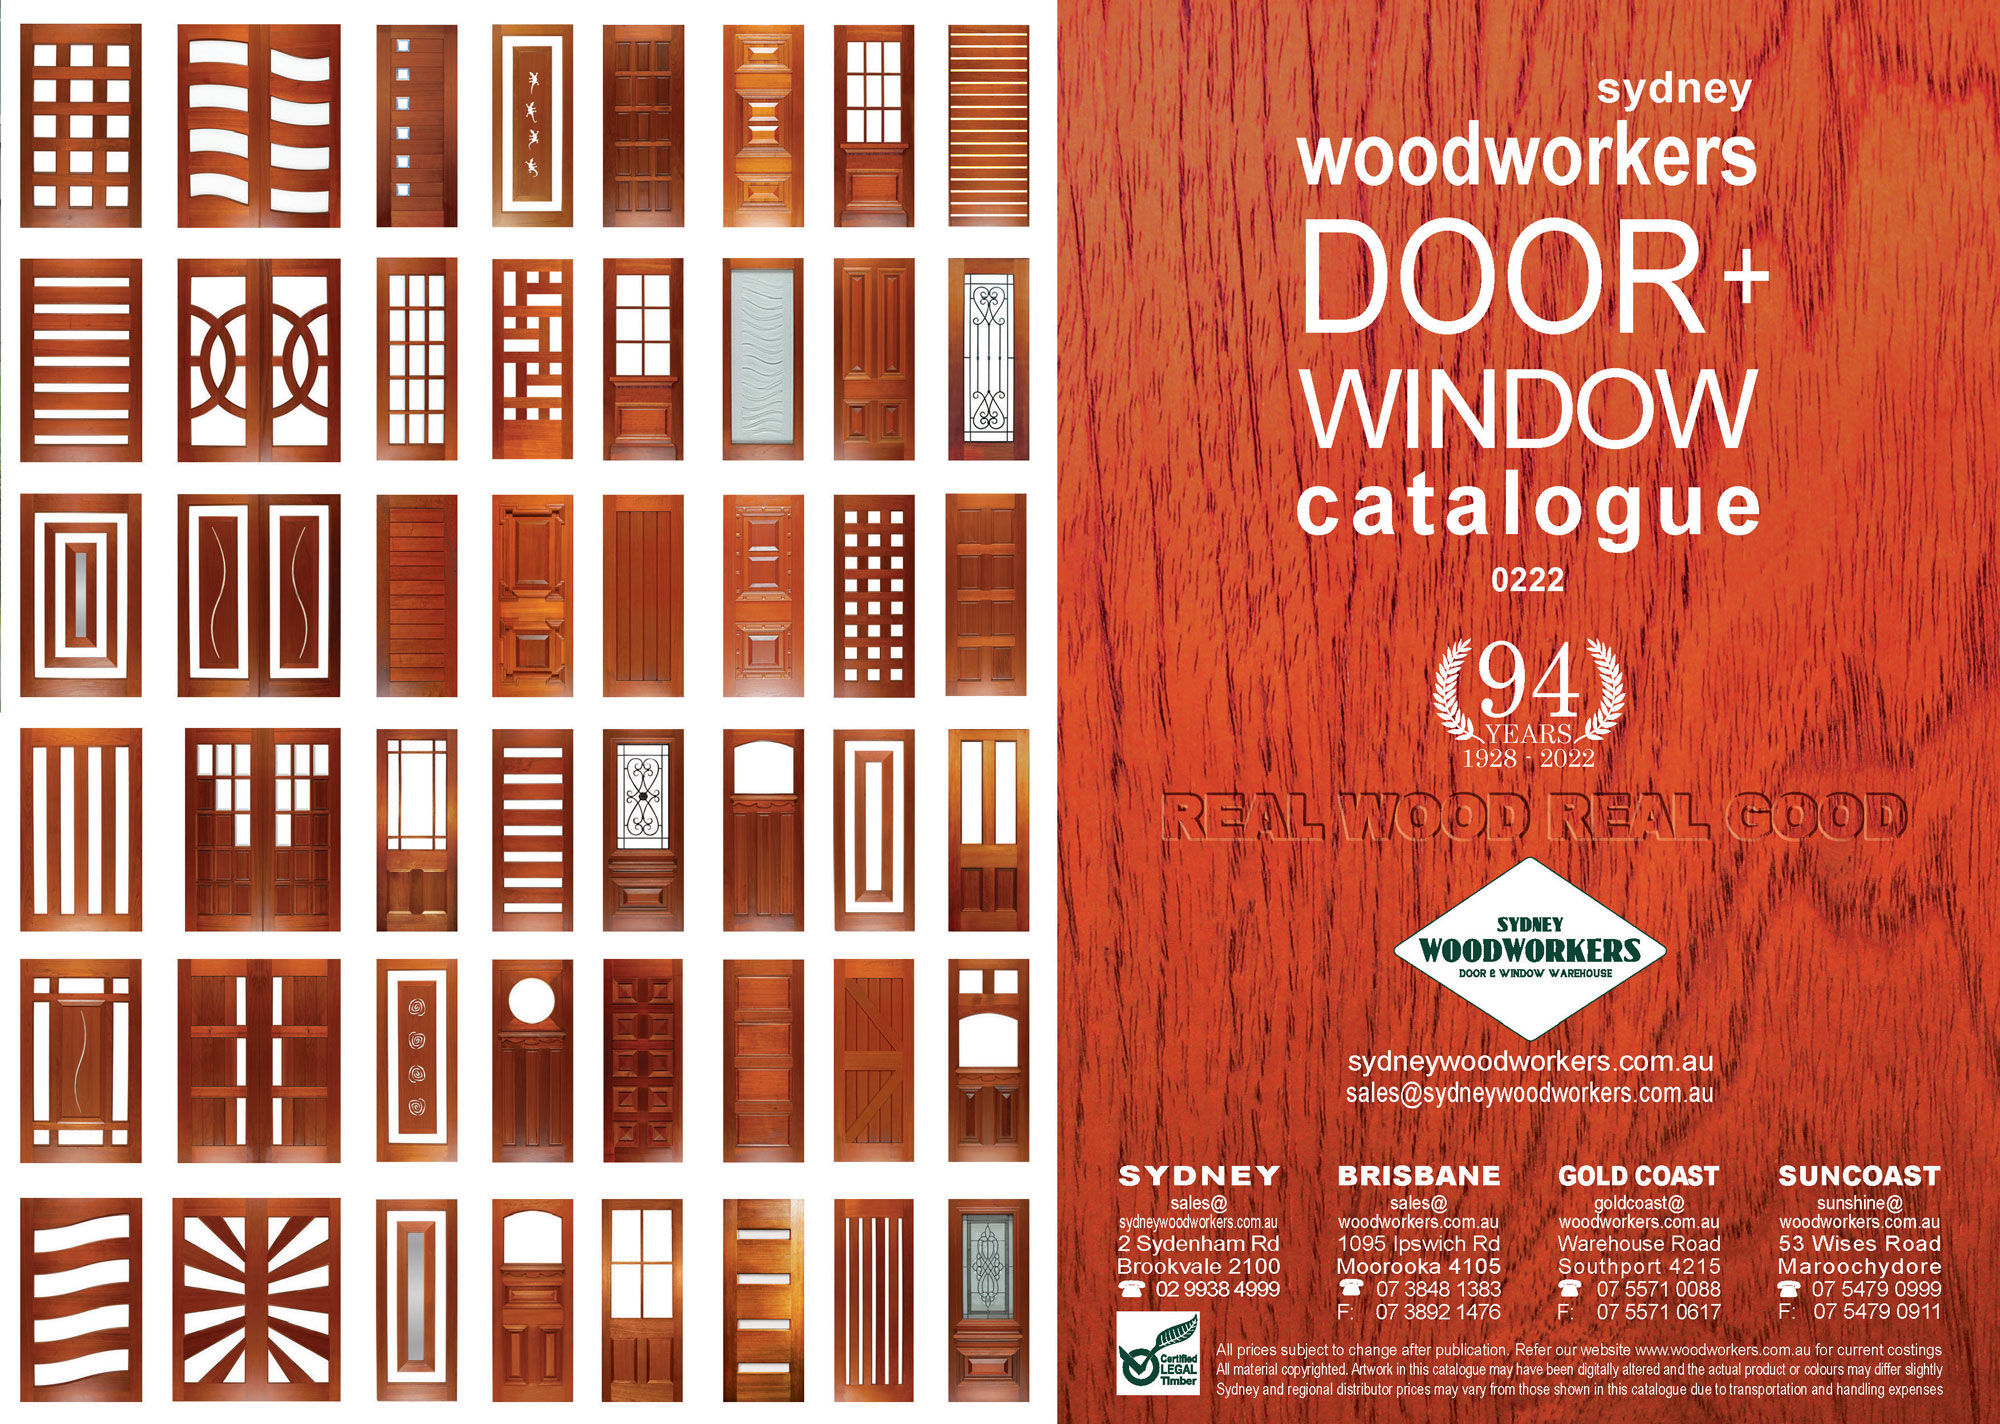 Door + Window Sydney woodworkers Catalogue